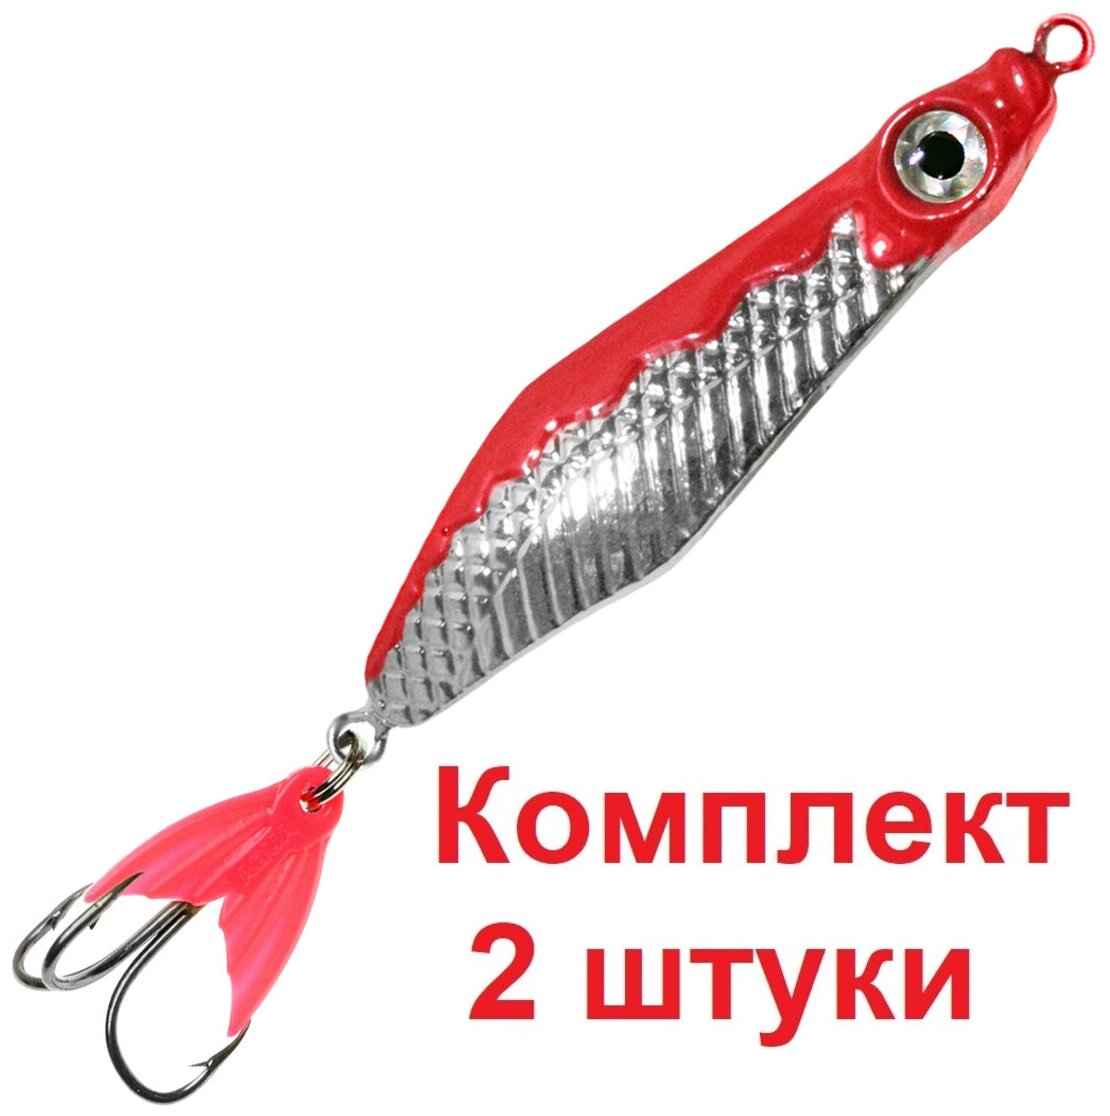 Блесна для рыбалки AQUA малек 17,0g цвет 03 (серебро, красный металлик), 2 штуки в комплекте